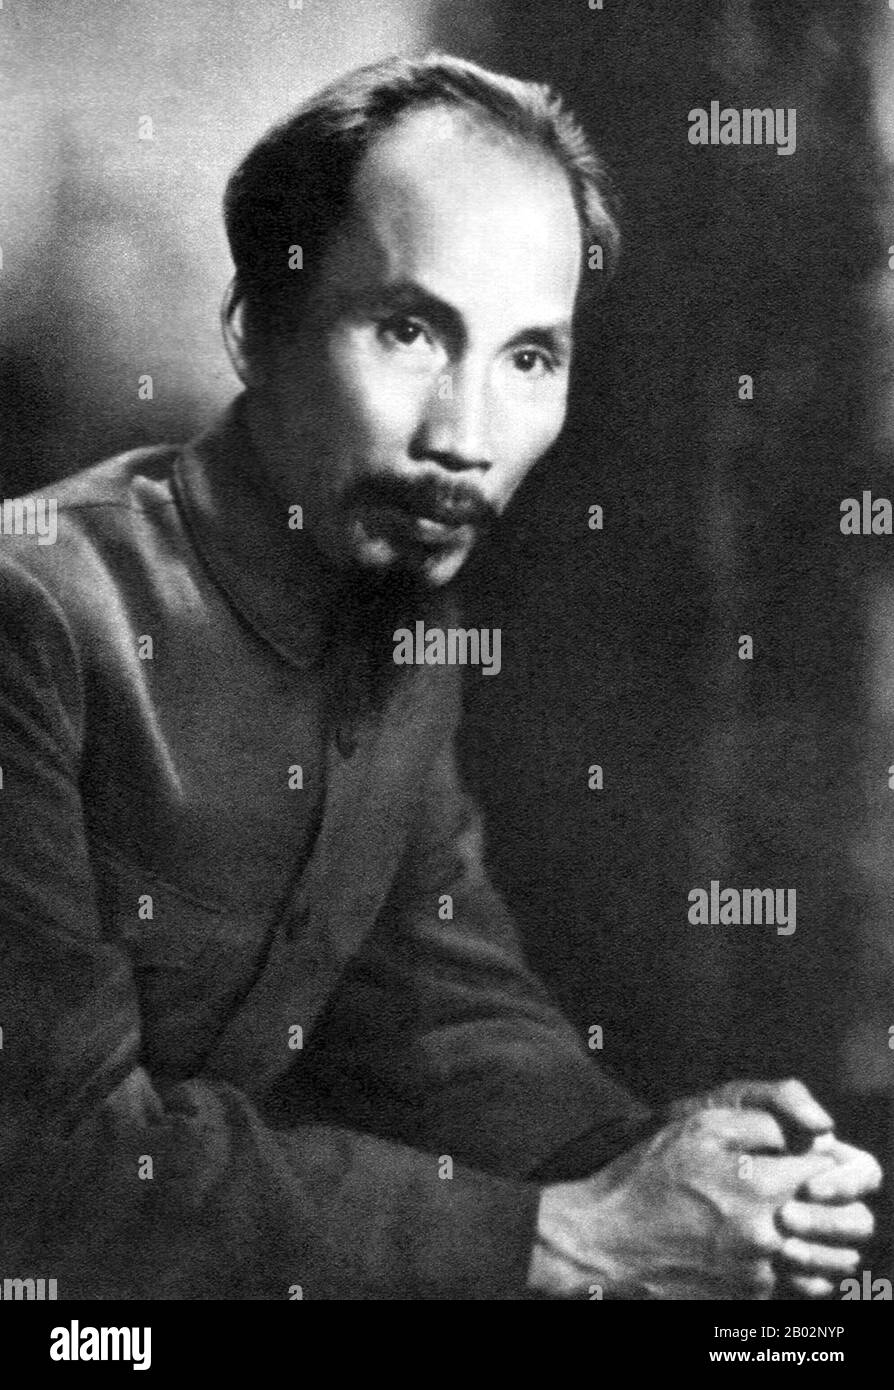 Hồ Chí Minh, né à Nguyễn Sinh Cung et également connu sous le nom de Nguyễn Ái Quốc (19 mai 1890 – 3 septembre 1969) était un leader révolutionnaire communiste vietnamien qui était Premier ministre (1946–1955) et président (1945–1969) de la République démocratique du Vietnam (Nord Vietnam). Il a formé la République démocratique du Vietnam et dirigé le Viet Cong pendant la guerre du Vietnam jusqu'à sa mort. Hồ a dirigé le mouvement d'indépendance du Viet Minh à partir de 1941, établissant la République démocratique du Vietnam gouvernée par les communistes en 1945 et battant l'Union française en 1954 à Dien bien Phu. Il a perdu le pouvoir politique à l'intérieur de non Banque D'Images